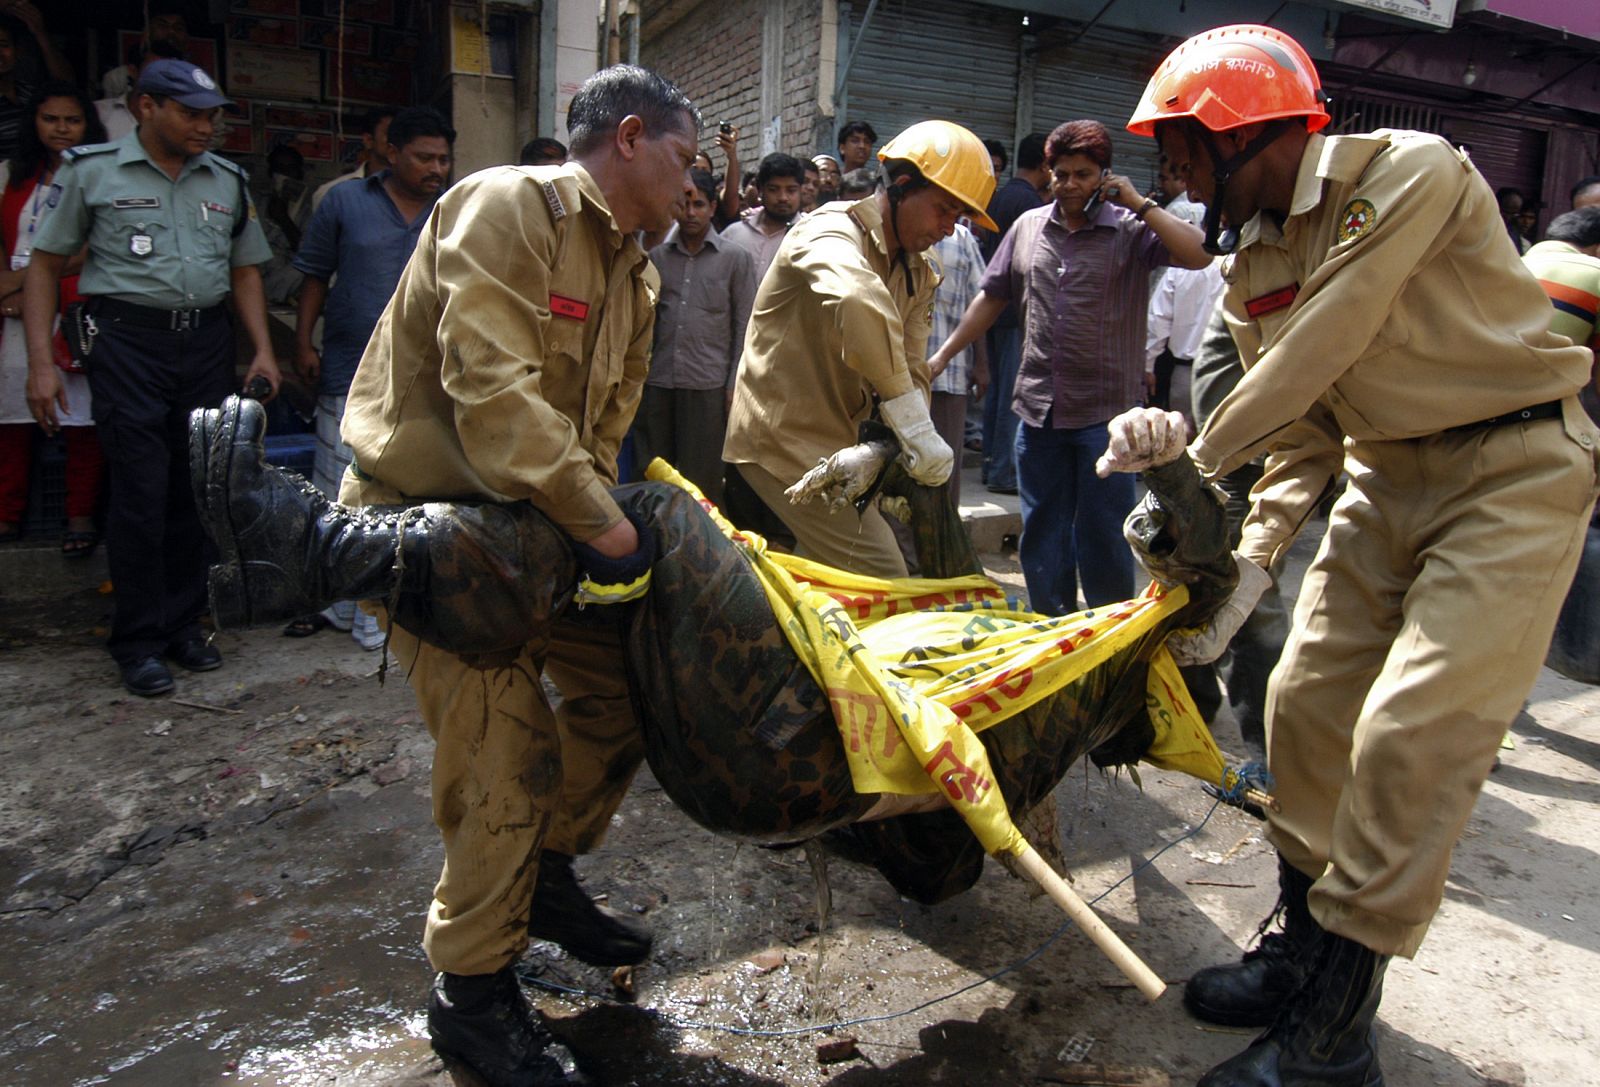 Los bomberos retiran cadáveres de la fosa común hallada en Dacca.